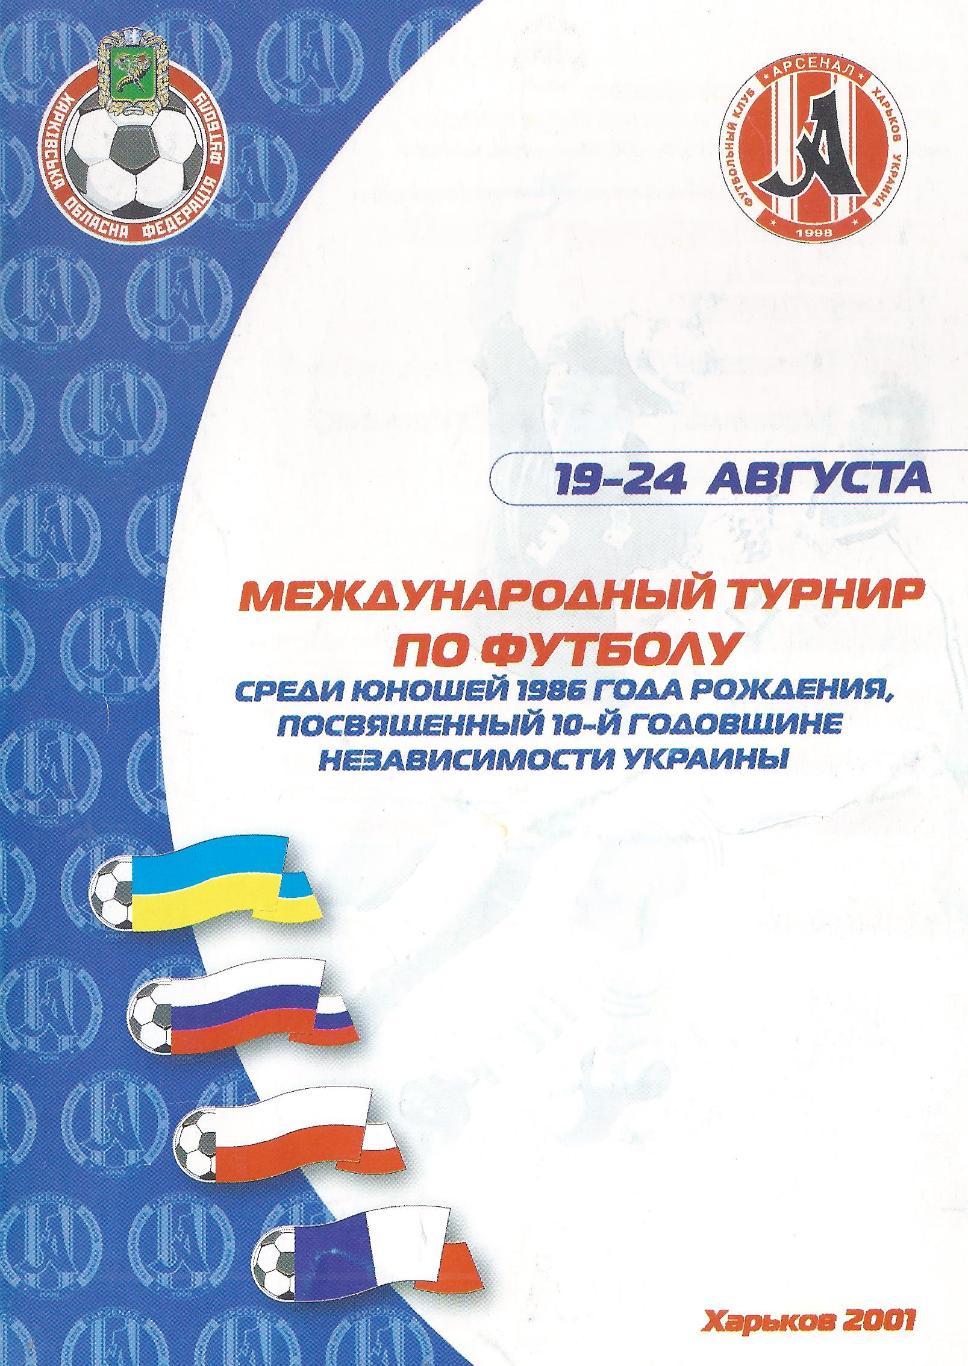 2001 - Турнир среди юношей 1986 г.р., посвященный независимости Украины